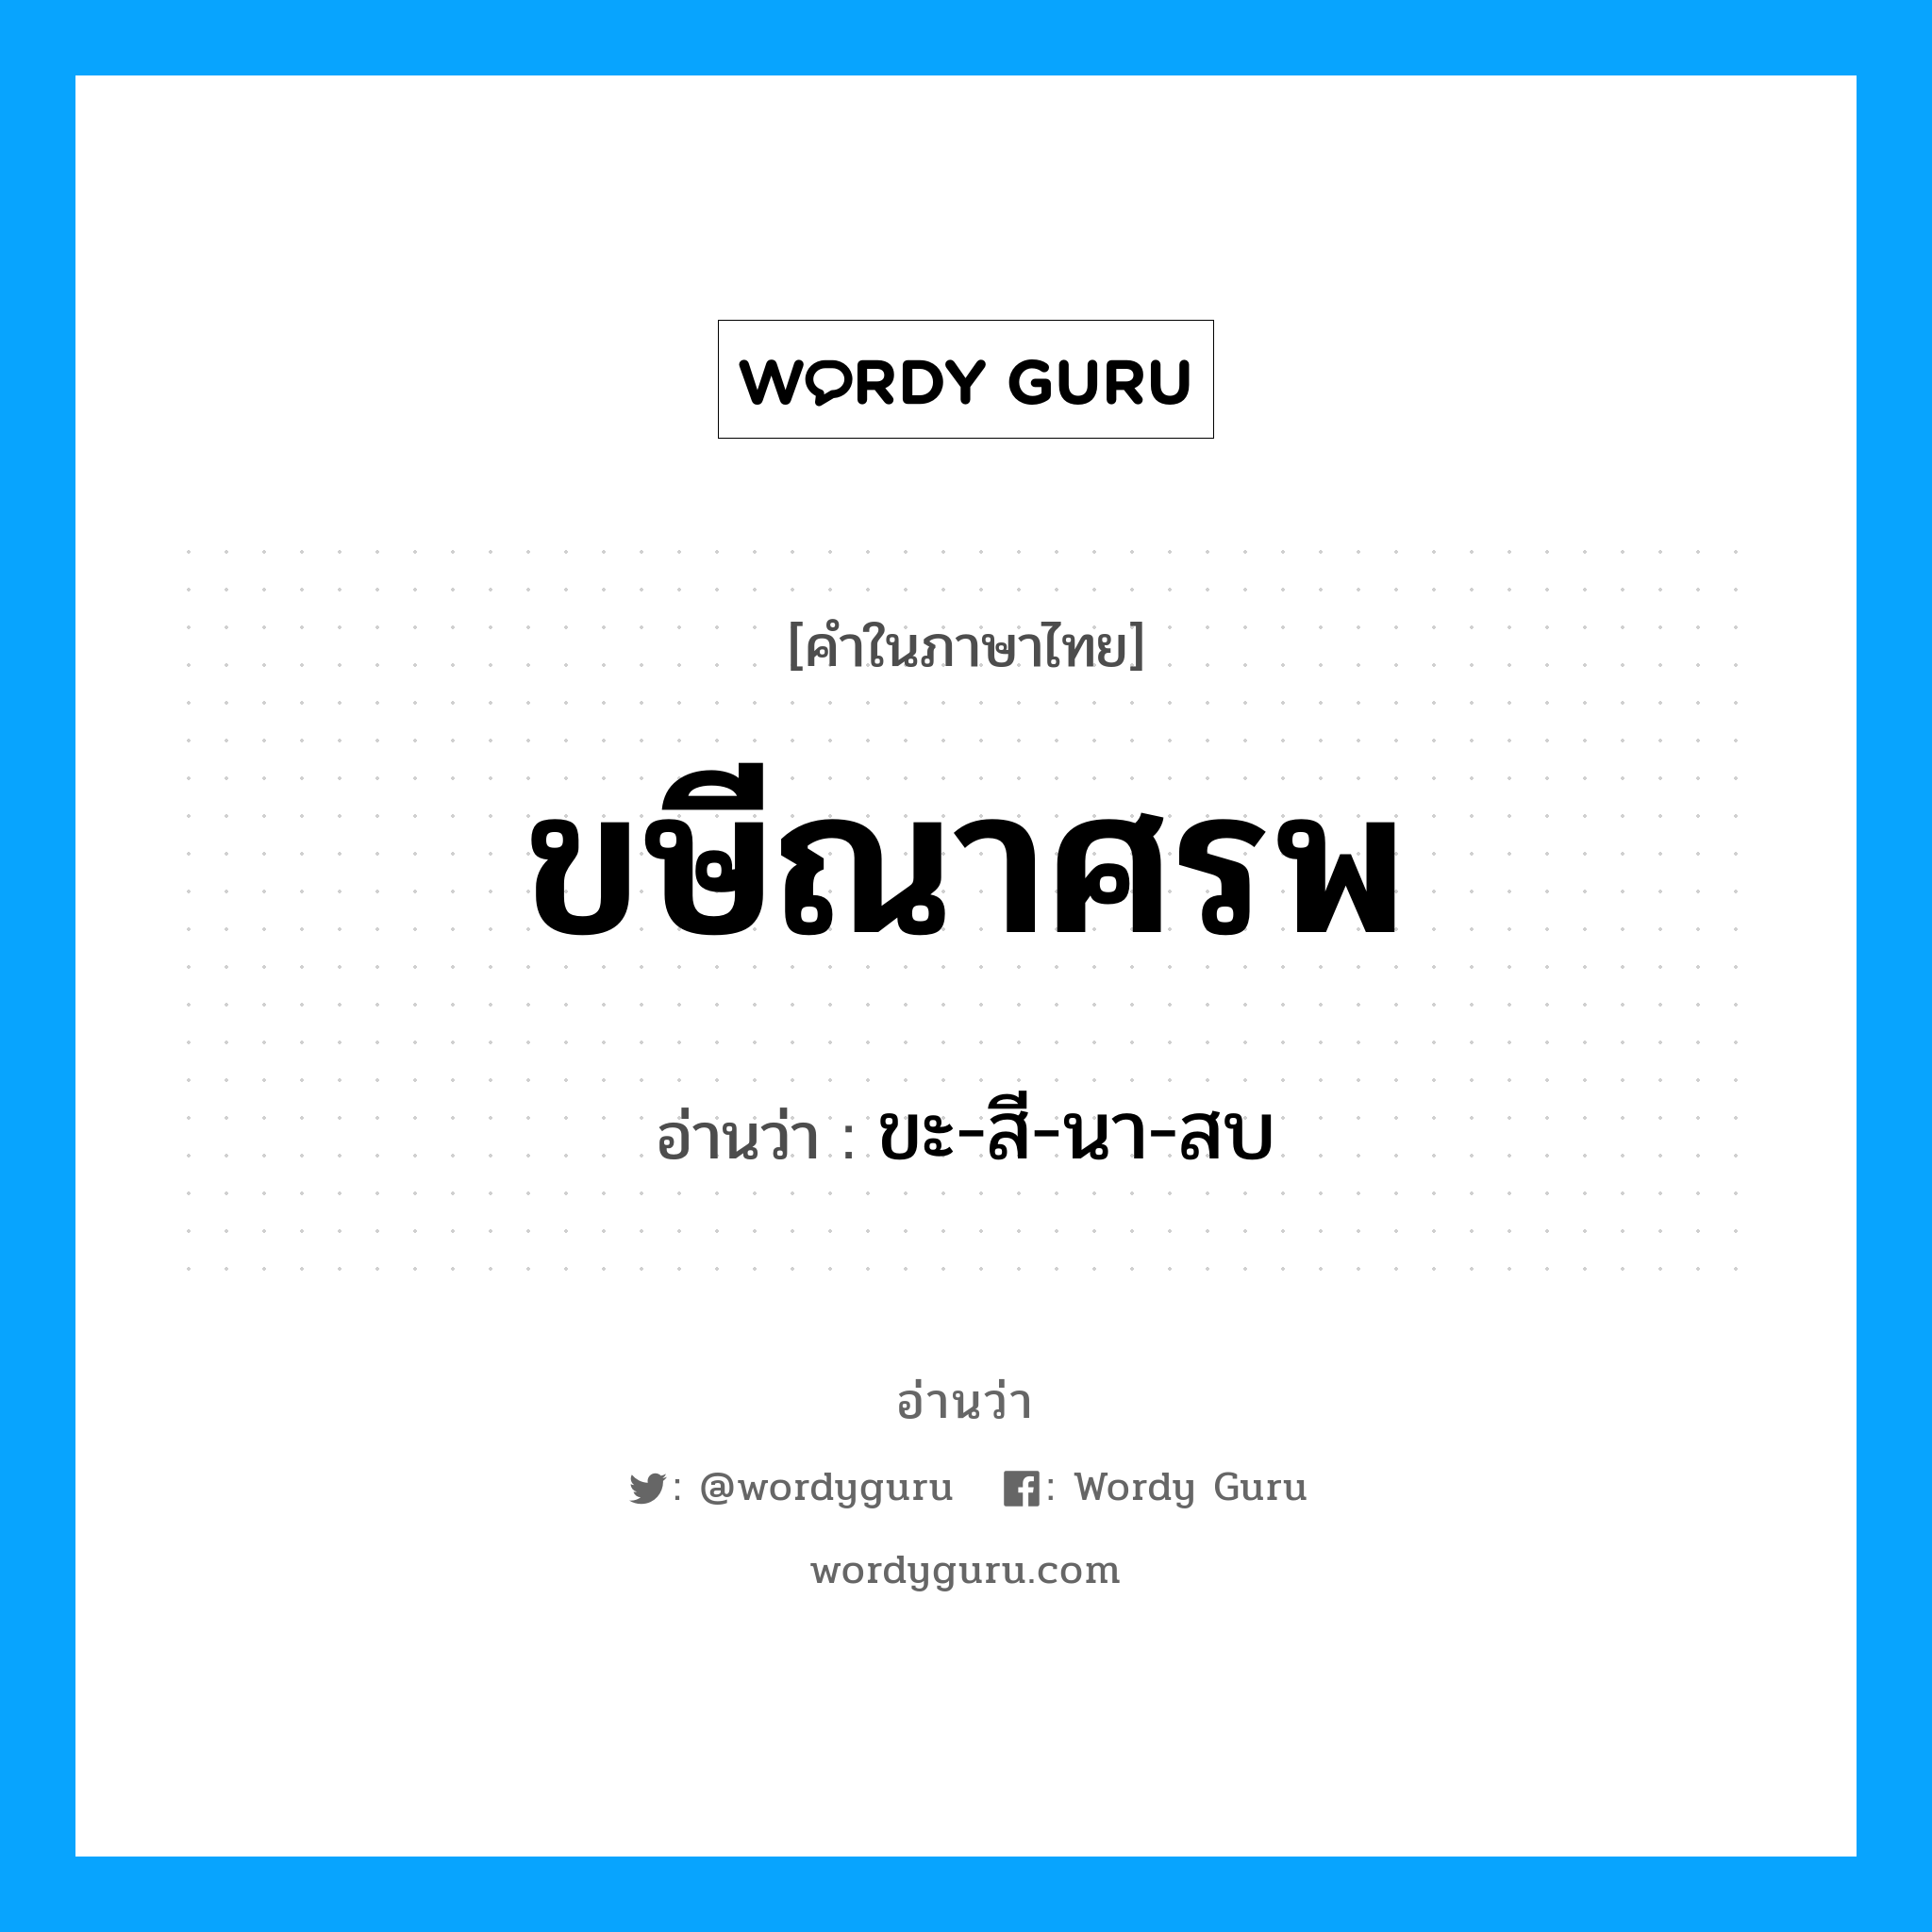 ขะ-สี-นา-สบ เป็นคำอ่านของคำไหน?, คำในภาษาไทย ขะ-สี-นา-สบ อ่านว่า ขษีณาศรพ